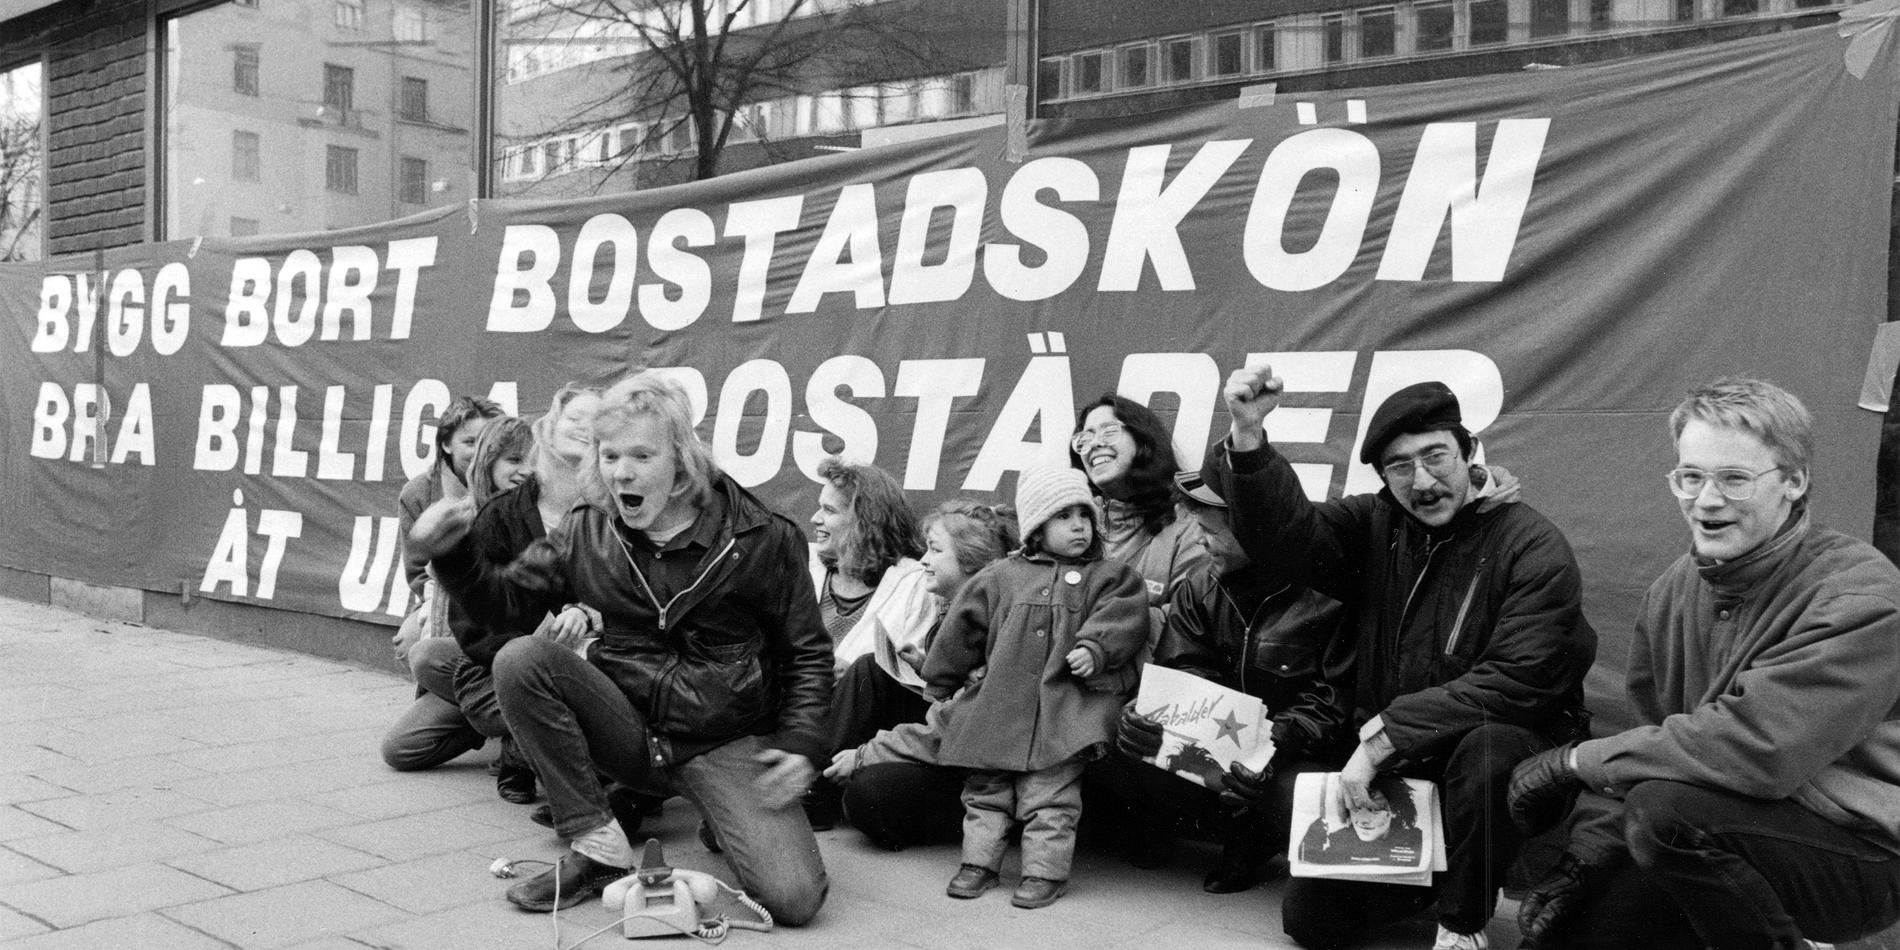 Det var svårt att få bostad även 1987, här demonstrerar unga bostadslösa utanför Bostadsförmedlingen som då låg på S:t Eriksgatan.